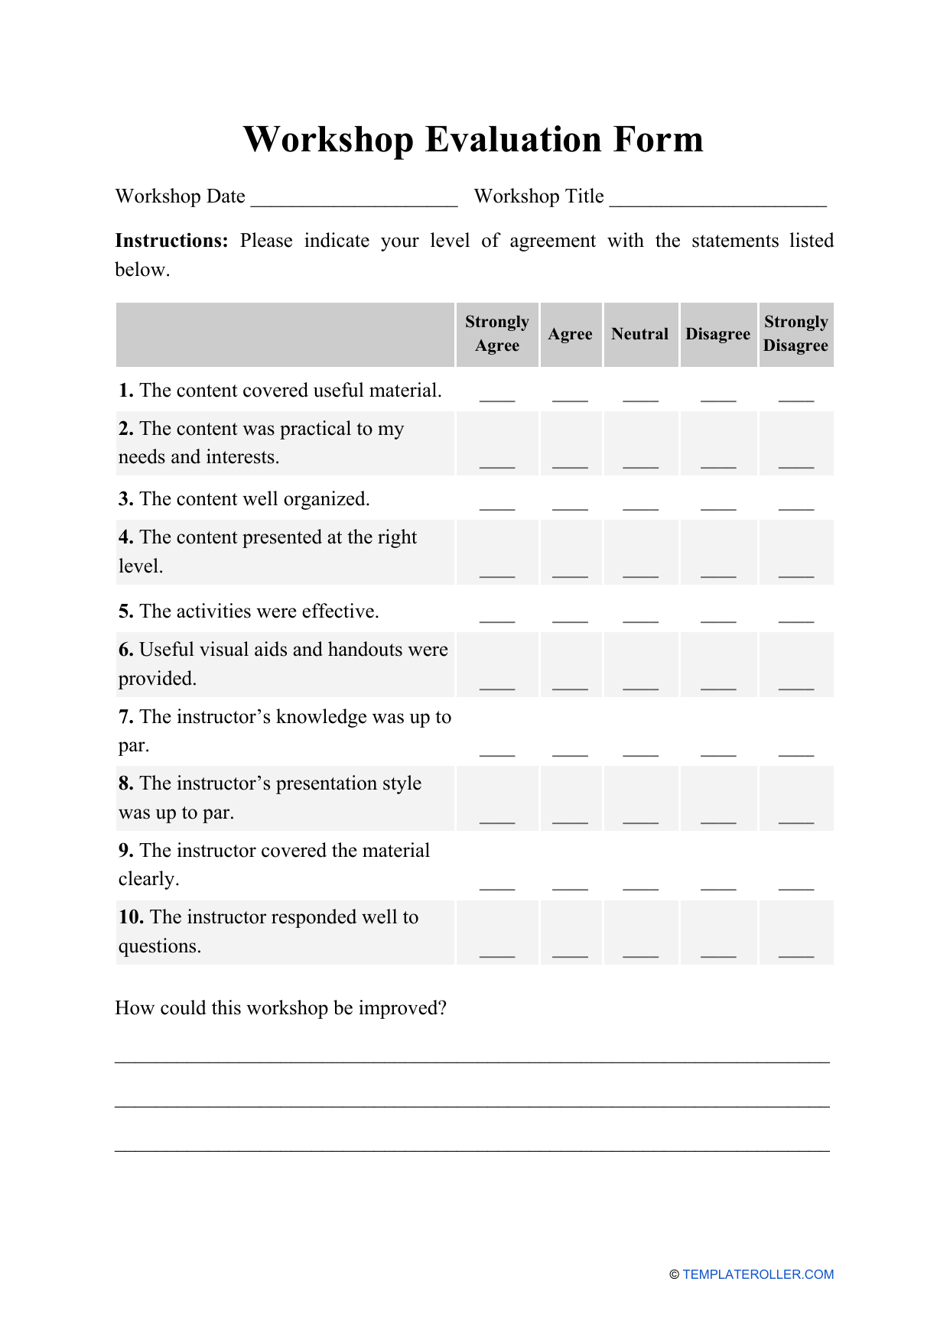 Workshop Evaluation Form, Page 1